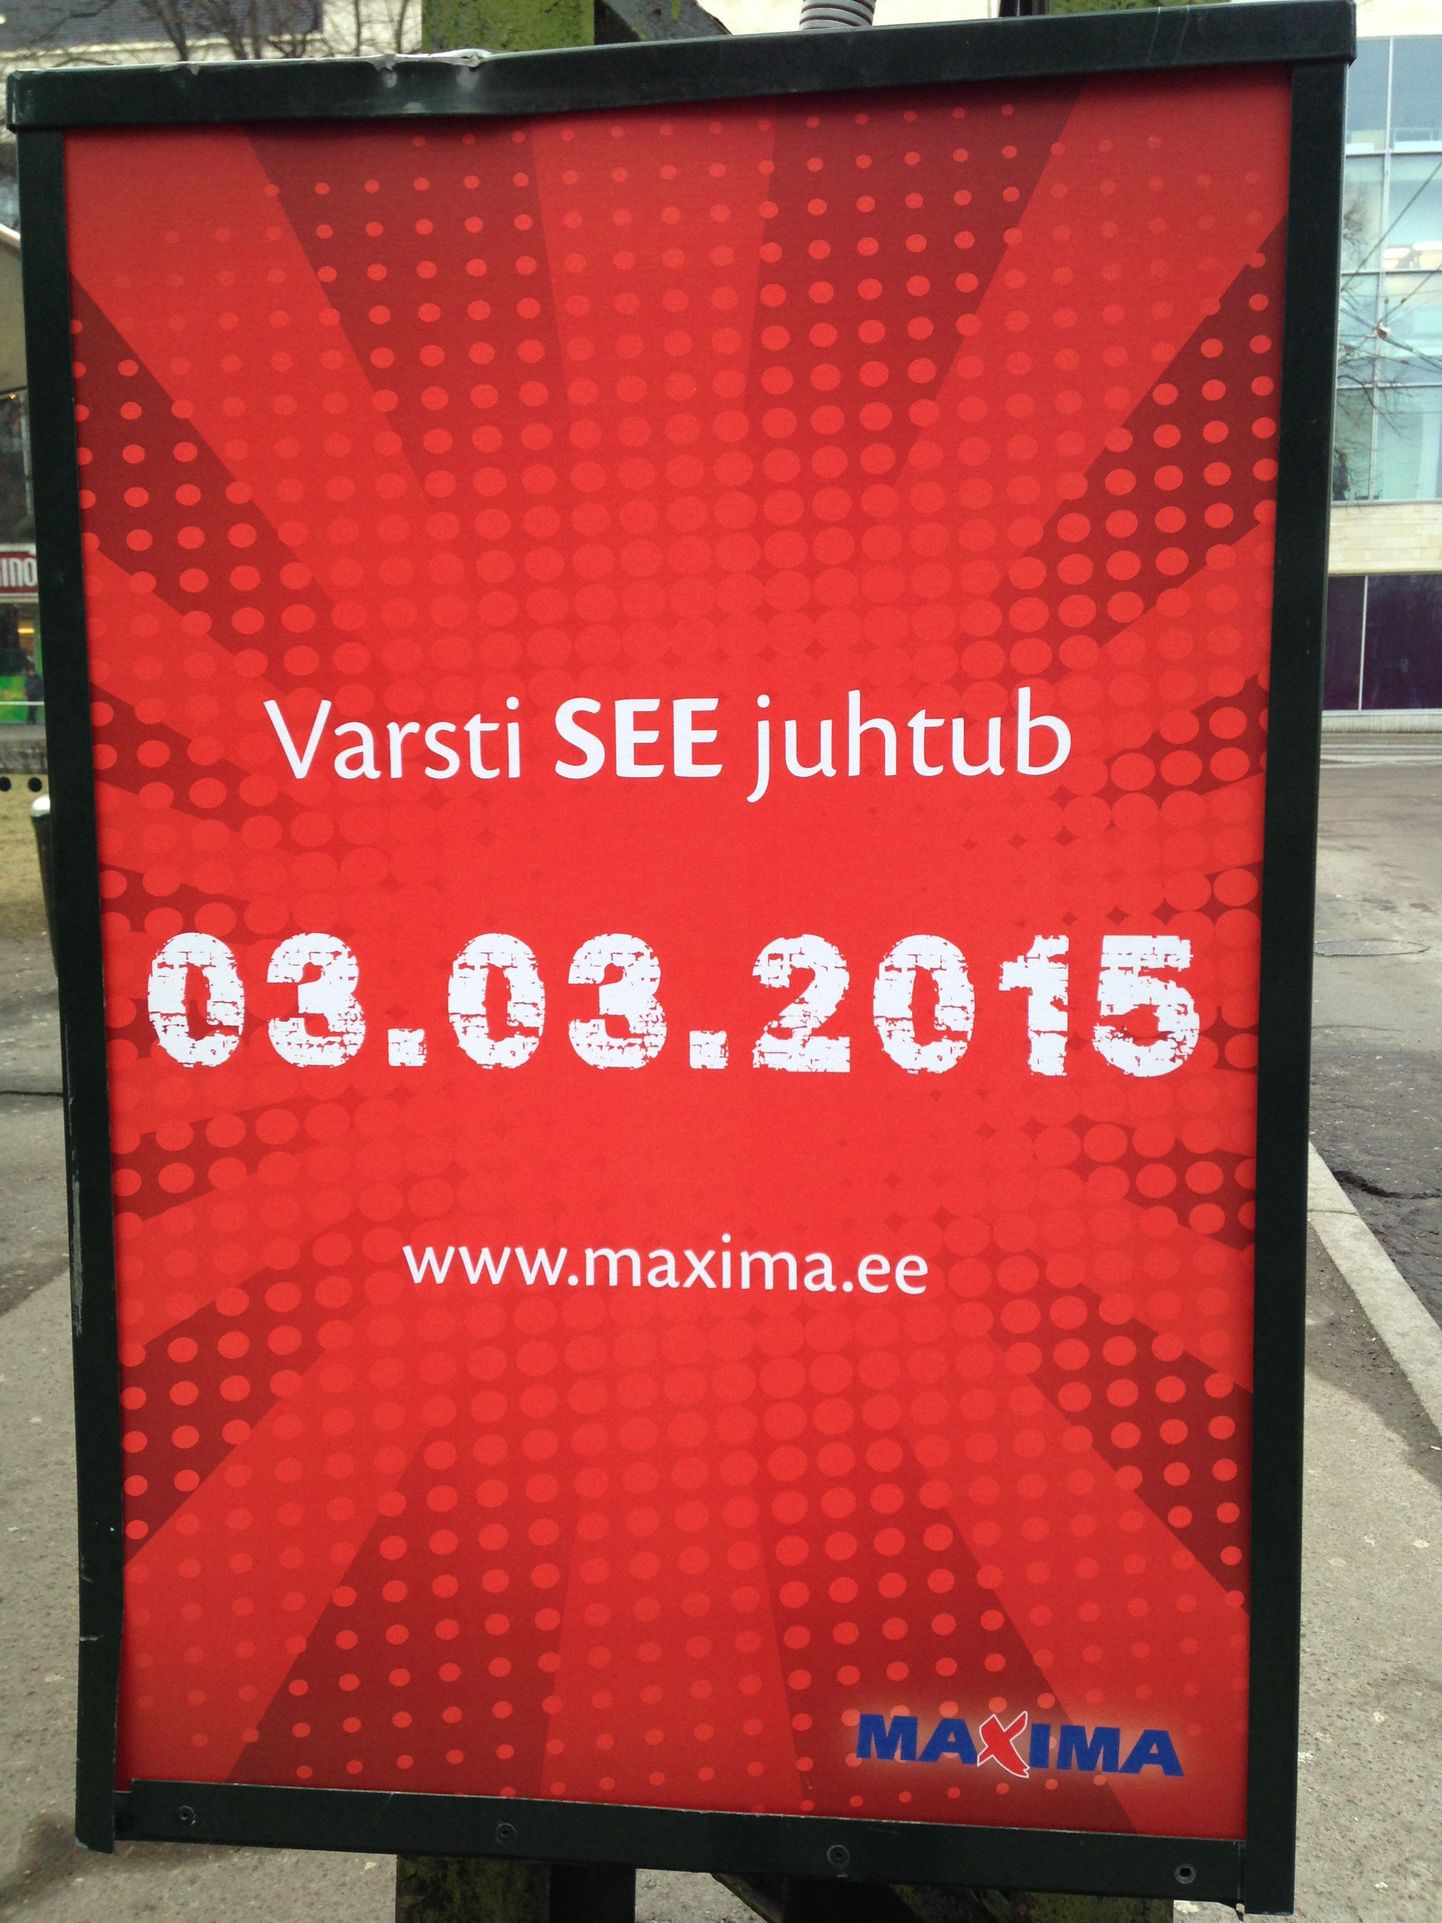 Maxima reklaamib uut, kuupäevaga 03.03.2015 algavat kampaaniat.